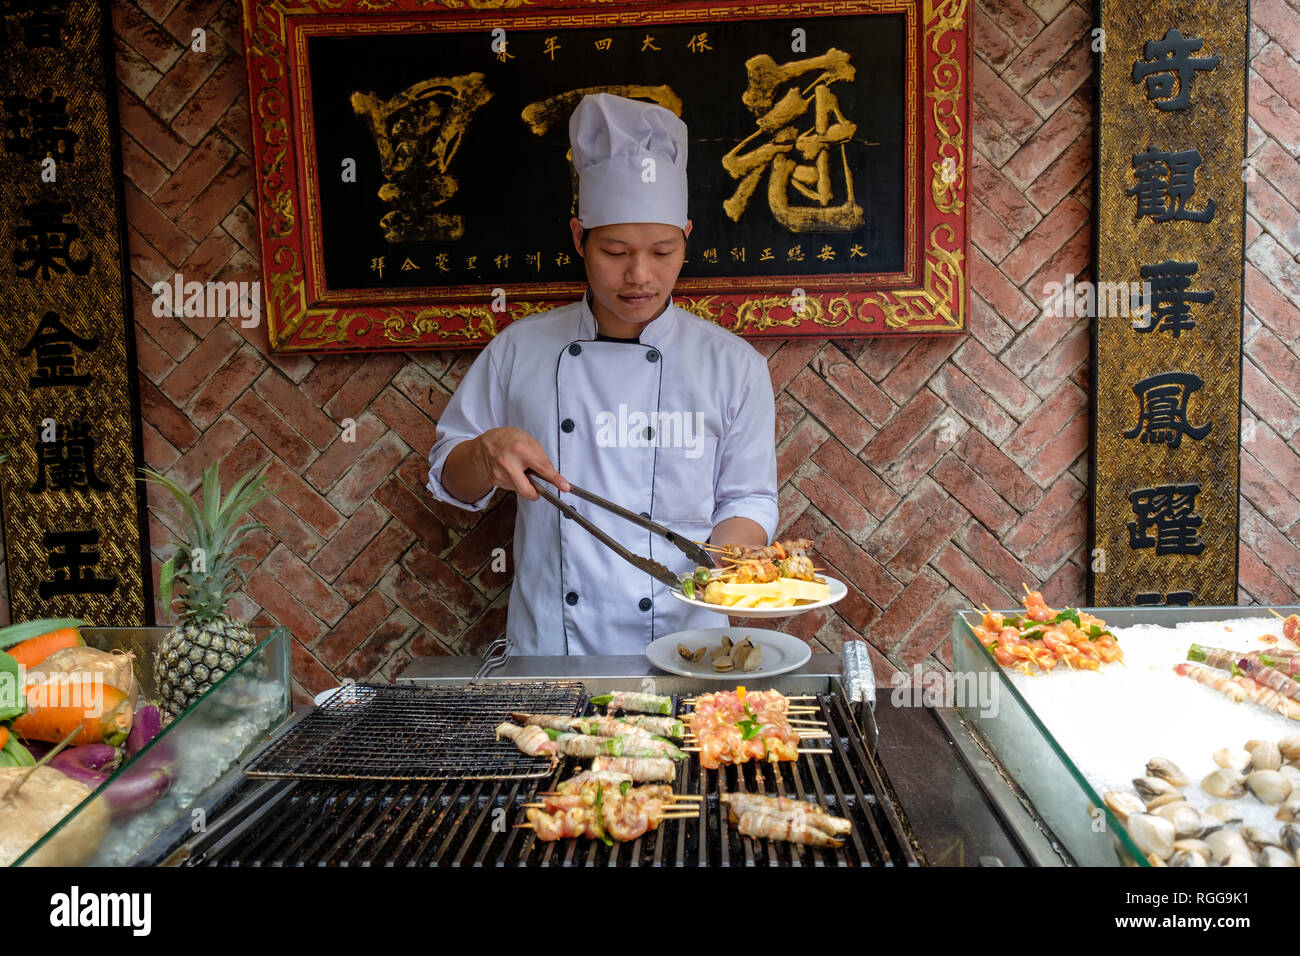 Cuisson cuire la viande et les fruits de mer au restaurant chinois Banque D'Images